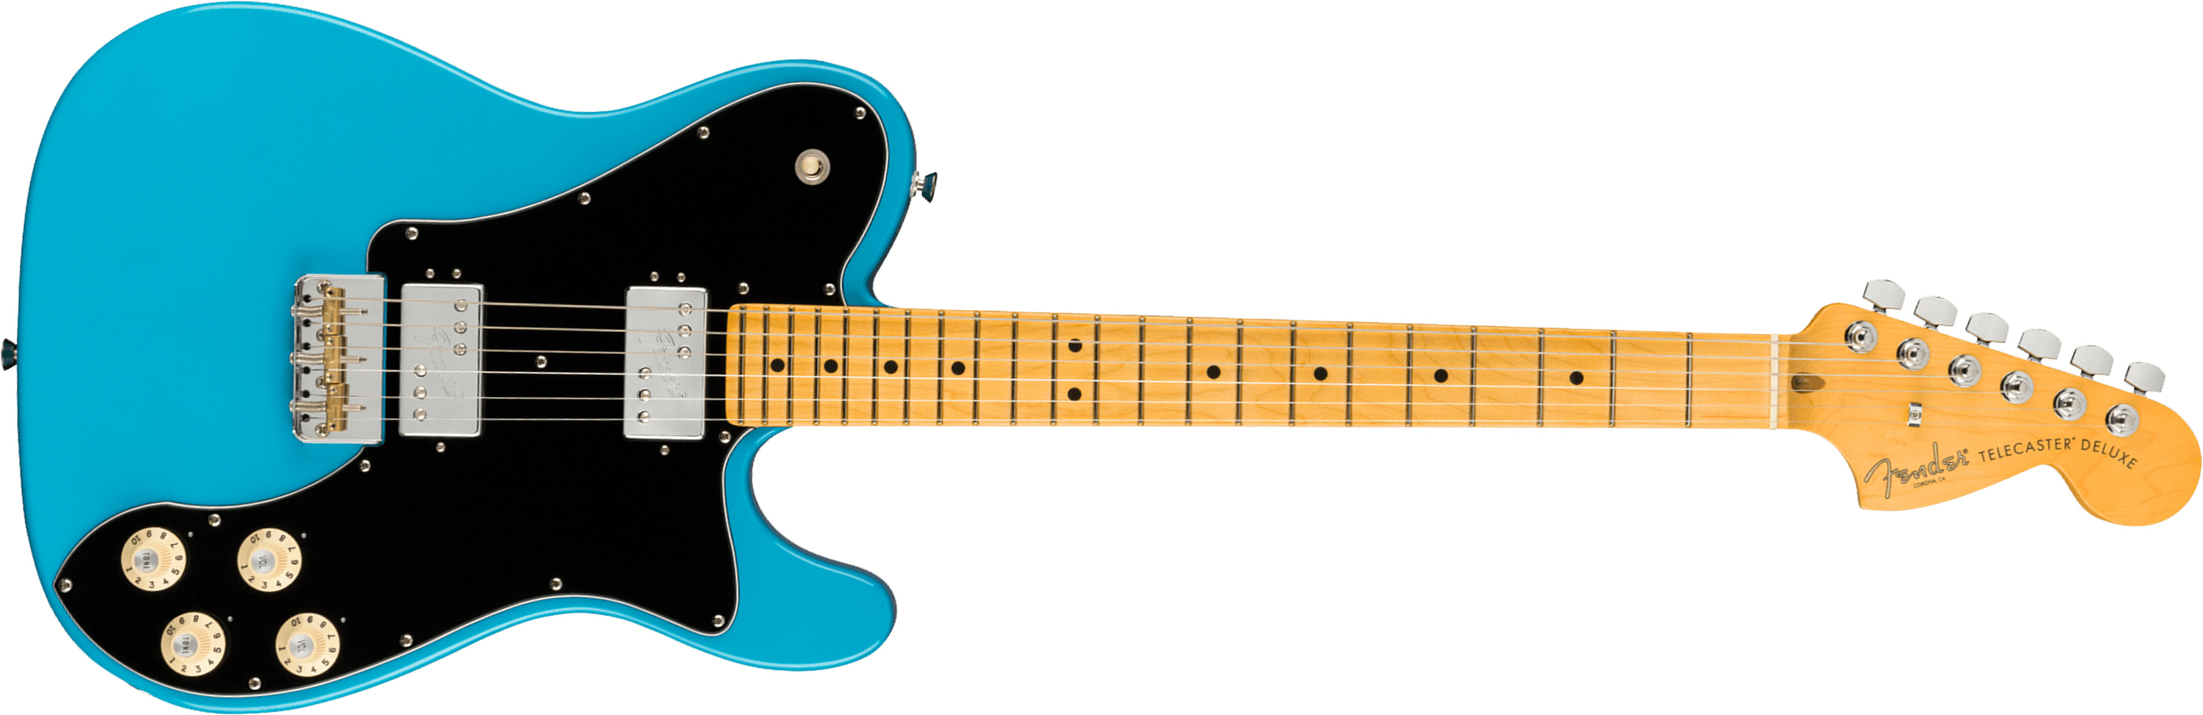 Fender Tele Deluxe American Professional Ii Usa Mn - Miami Blue - Guitarra eléctrica con forma de tel - Main picture